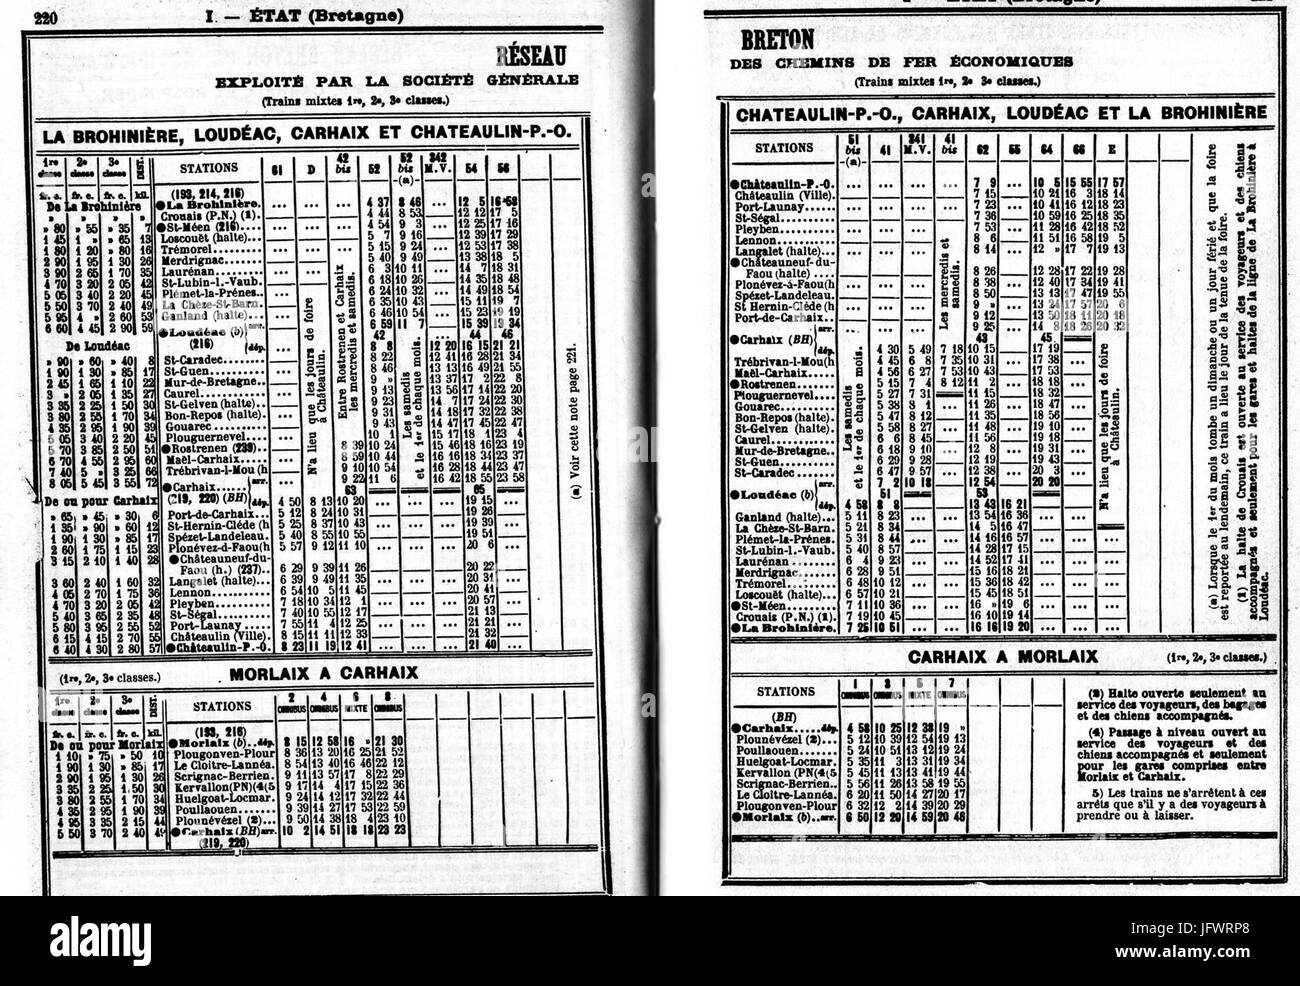 Chaix 1914 - Réseau Breton (Brohinière Loudeac Carhaix Chateaulin) Stock Photo